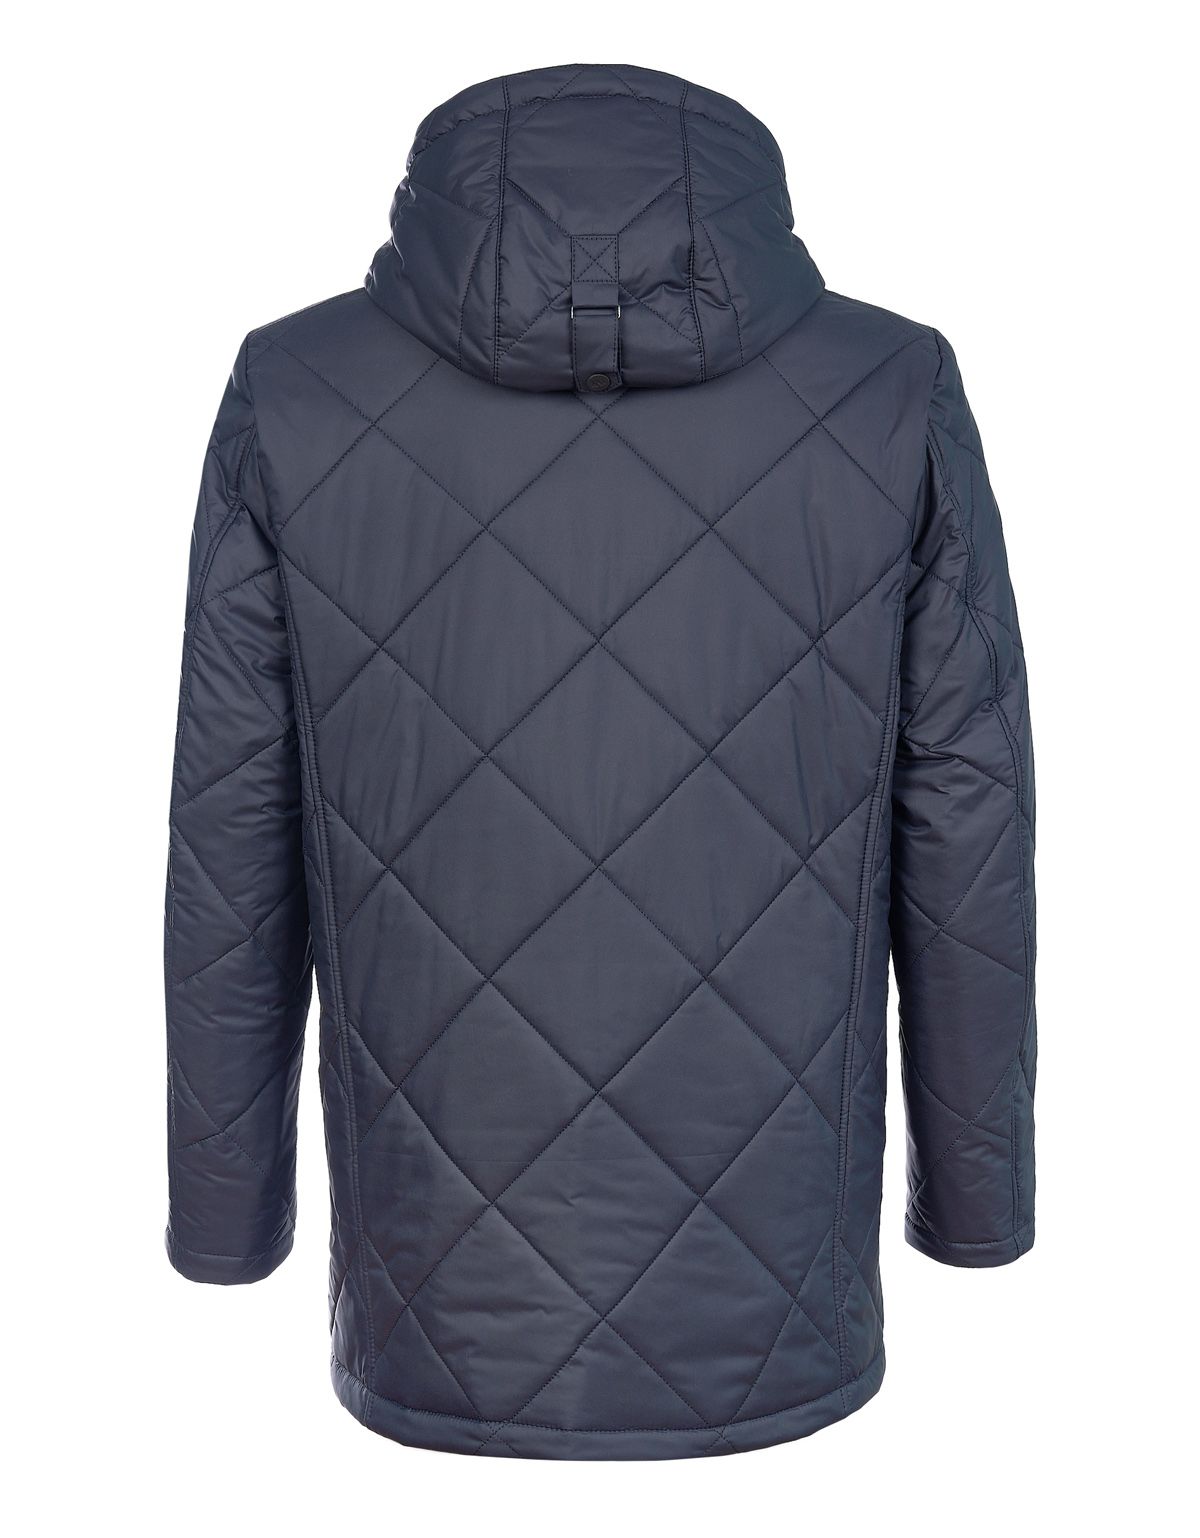 Куртка мужская утеплённная MEUCCI с капюшоном | купить в интернет-магазине Olymp-Men